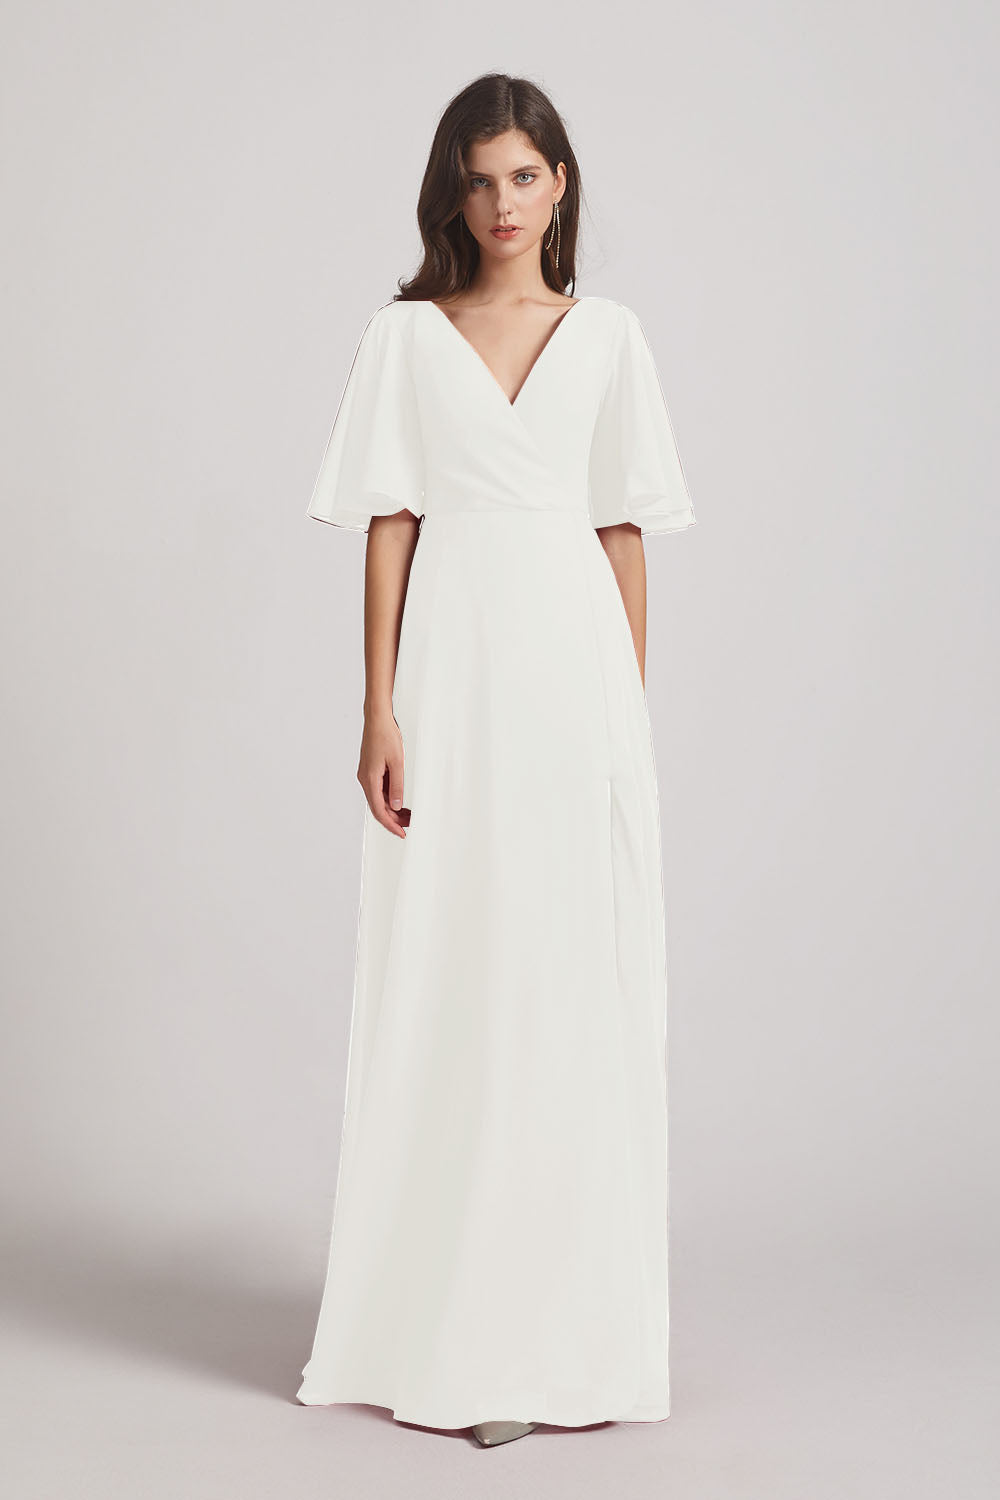 Alfa Bridal Ivory V-Neck Chiffon Side Slit Bridesmaid Dresses With Flutter Half Sleeves (AF0056)